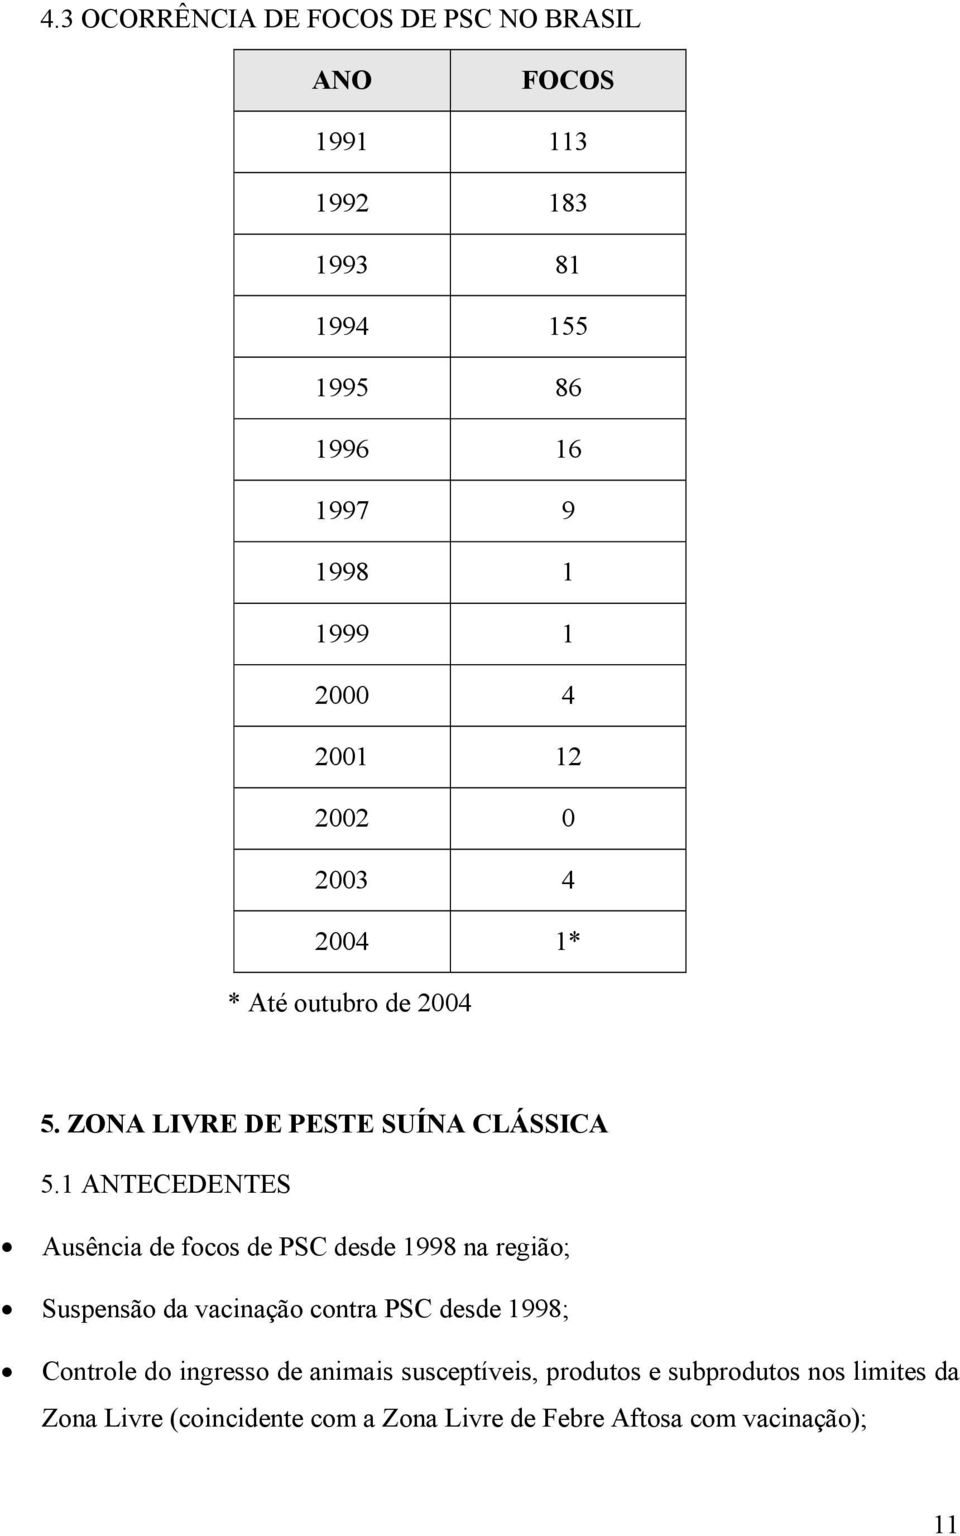 1 ANTECEDENTES Ausência de focos de PSC desde 1998 na região; Suspensão da vacinação contra PSC desde 1998; Controle do